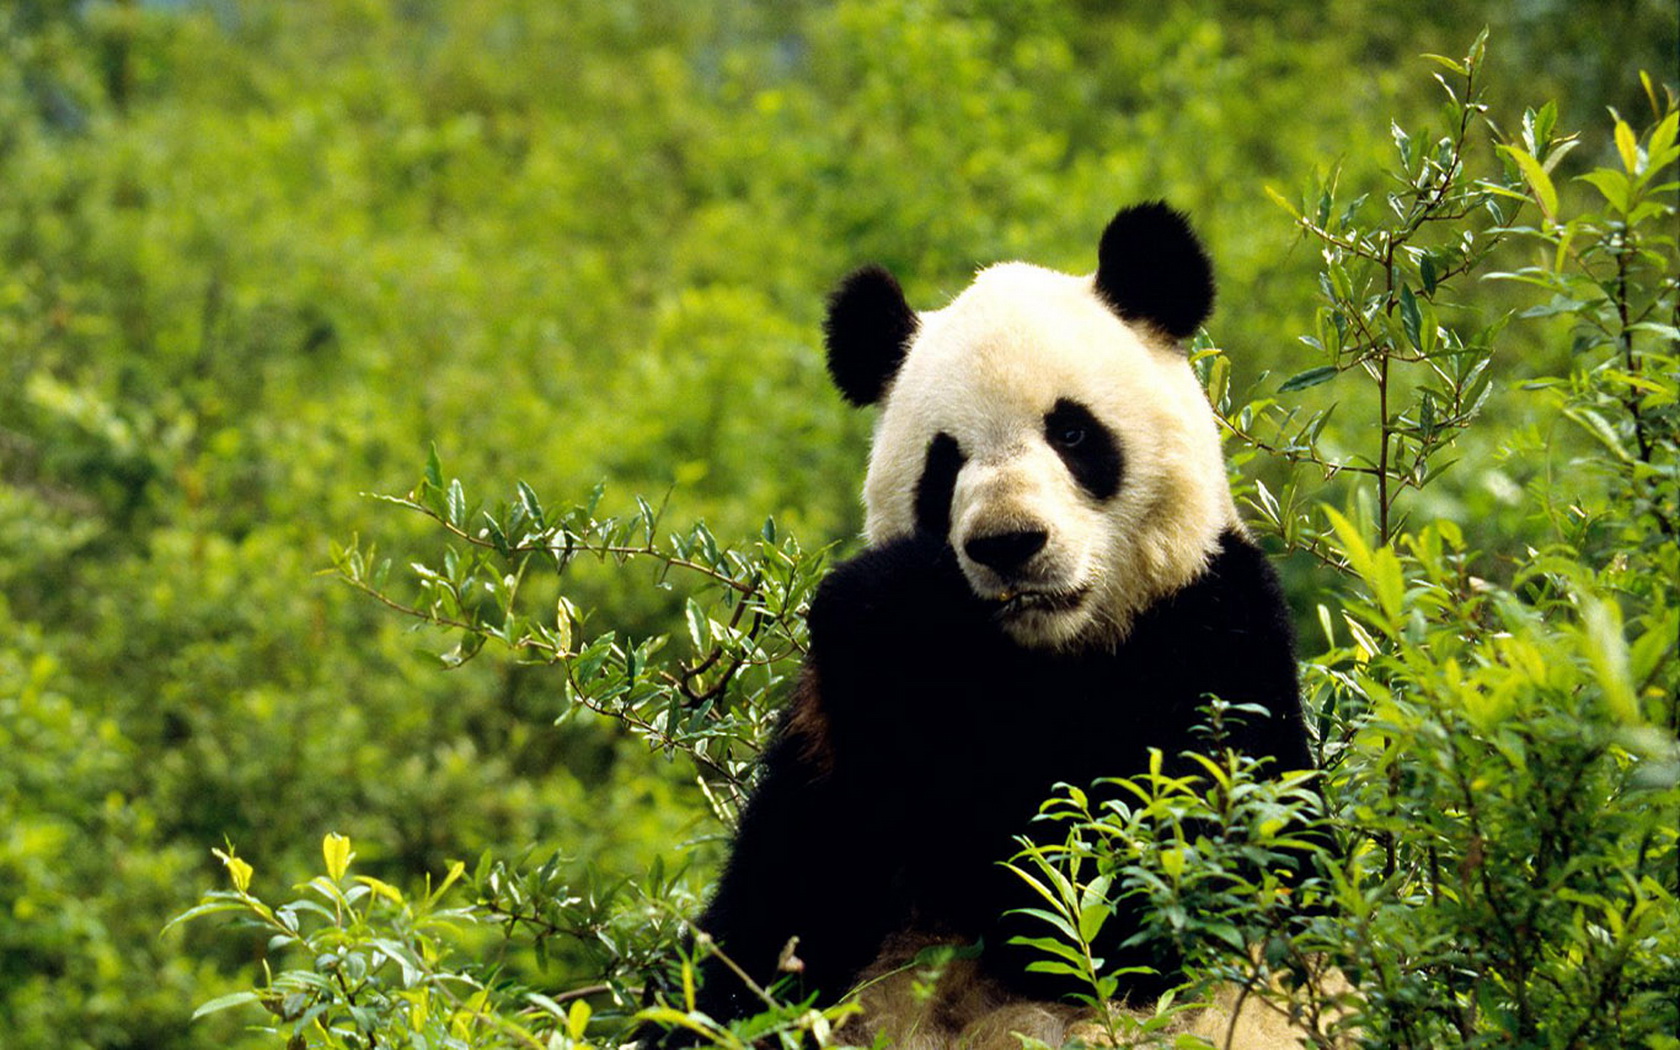 Free download wallpaper Animal, Panda on your PC desktop